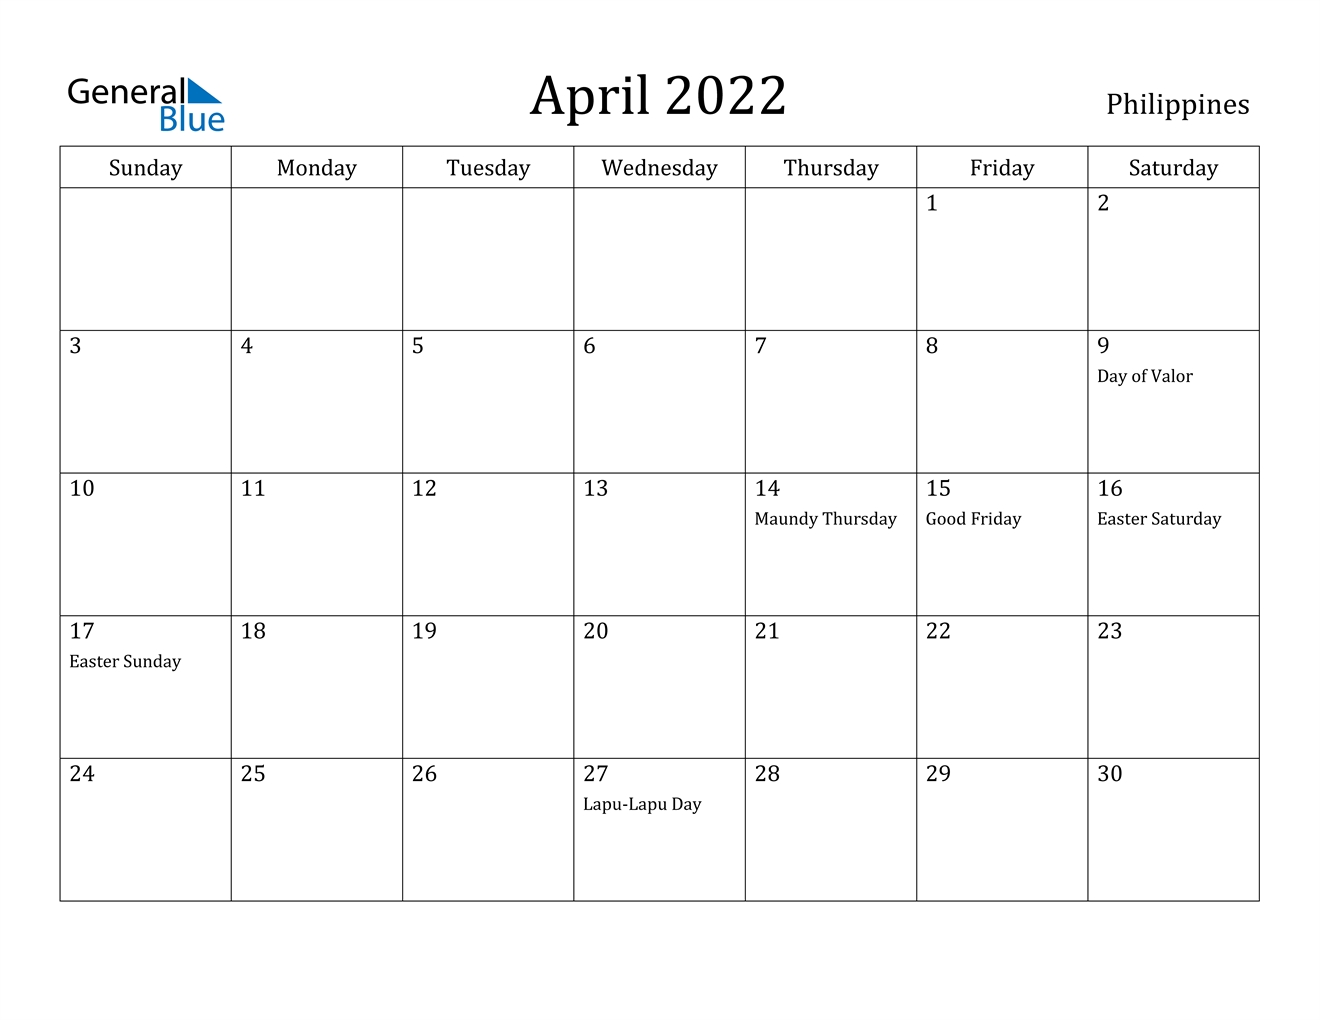 April 2022 Calendar - Philippines